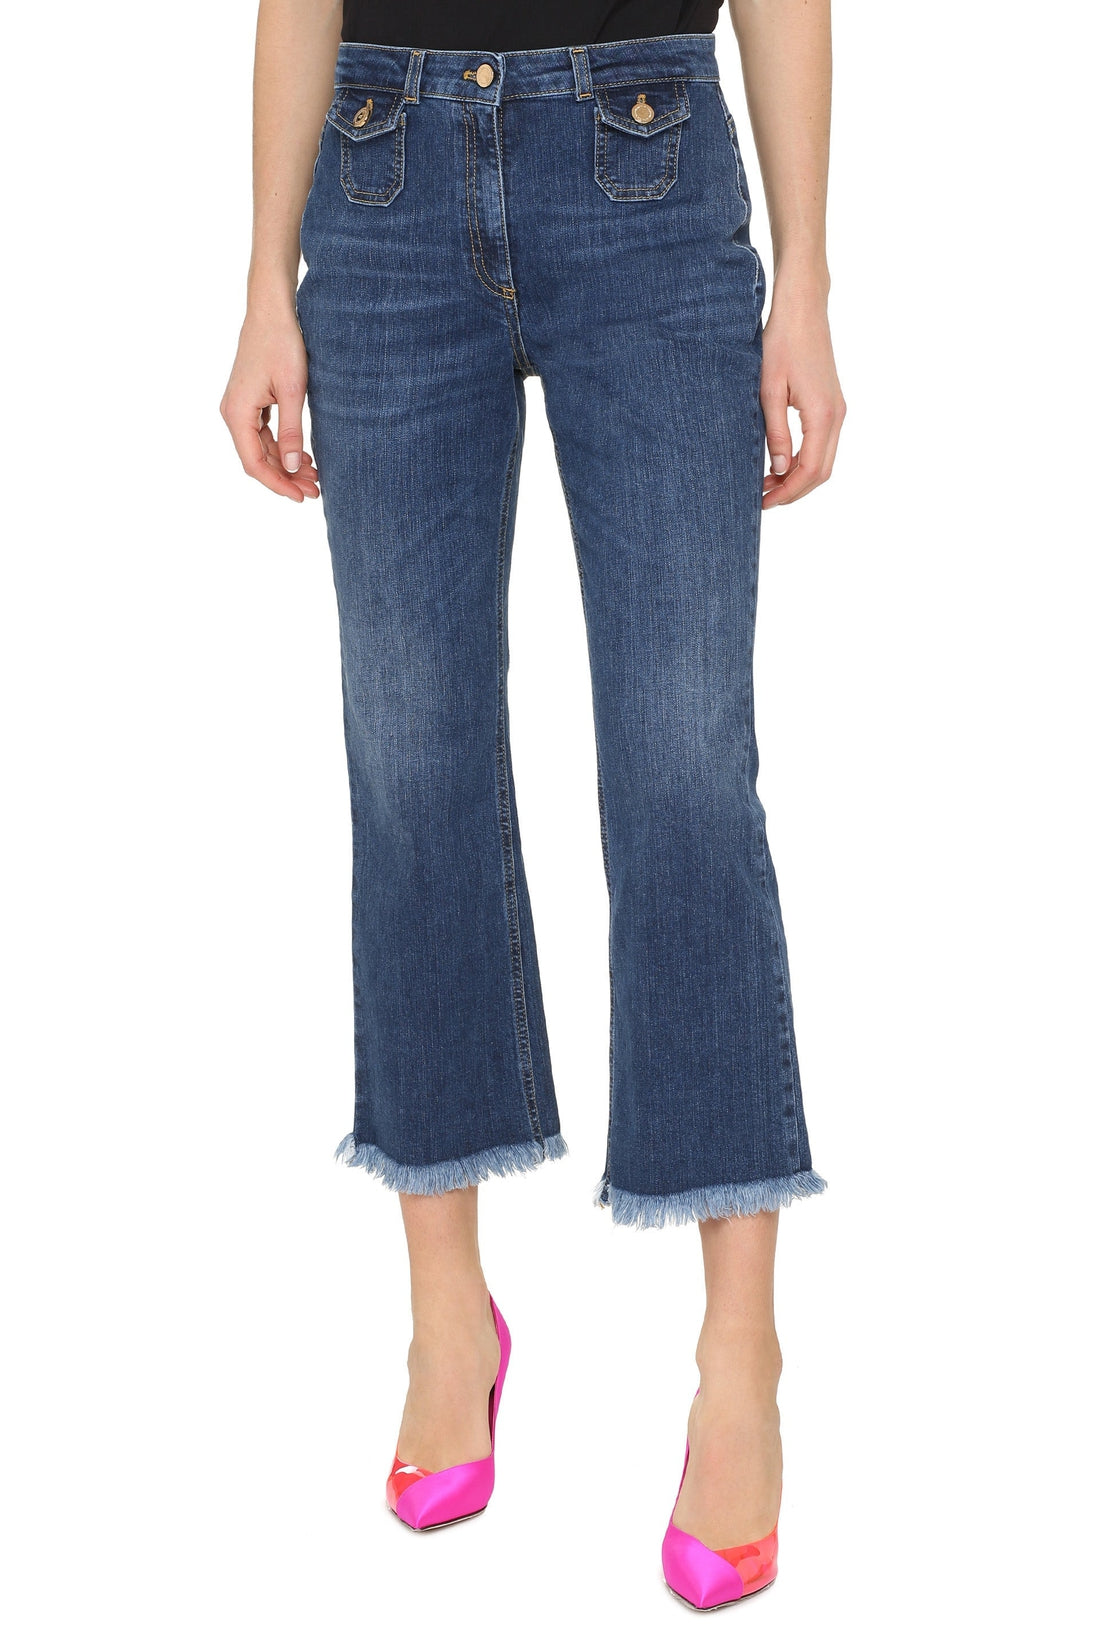 Elisabetta Franchi-OUTLET-SALE-Cropped slim fit jeans-ARCHIVIST